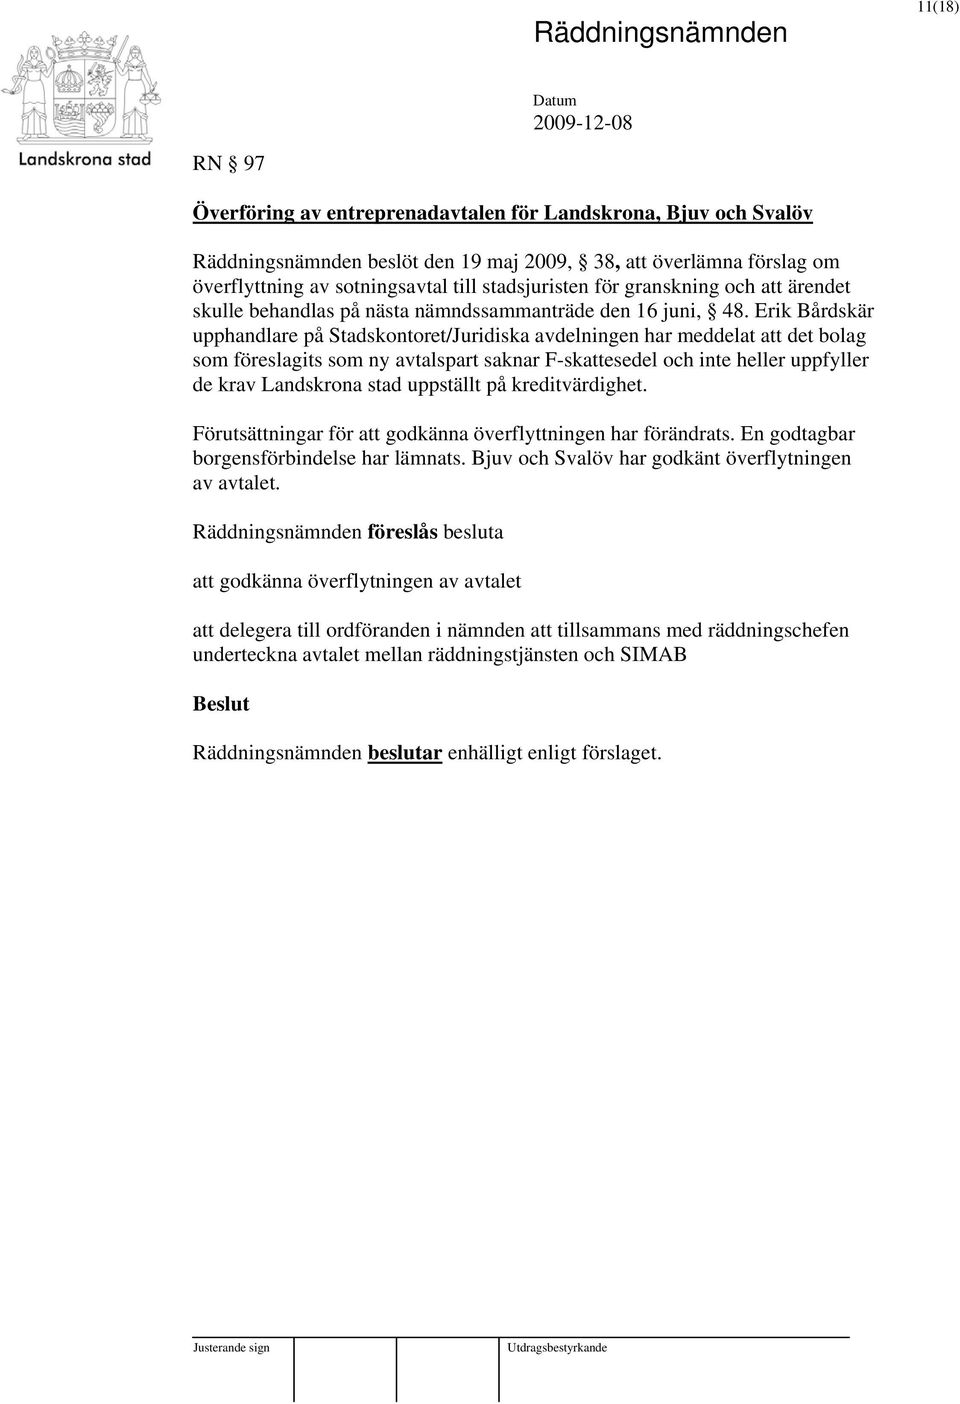 Erik Bårdskär upphandlare på Stadskontoret/Juridiska avdelningen har meddelat att det bolag som föreslagits som ny avtalspart saknar F-skattesedel och inte heller uppfyller de krav Landskrona stad